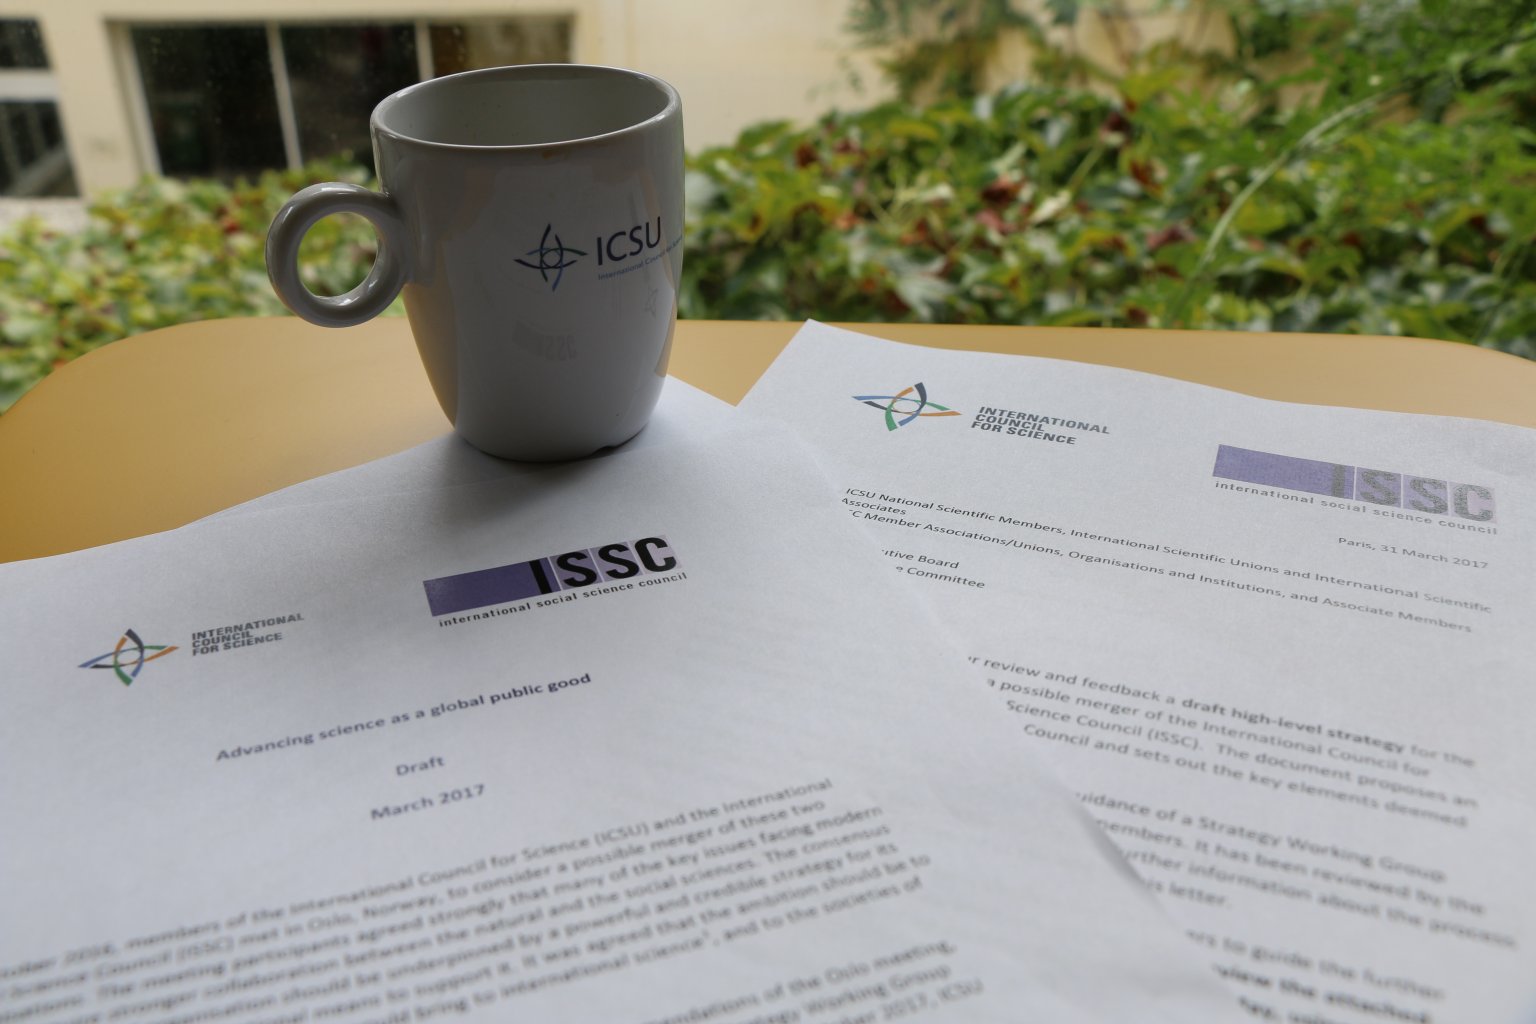 Qu'ont à dire les membres sur le projet de stratégie ICSU-ISSC proposé ?